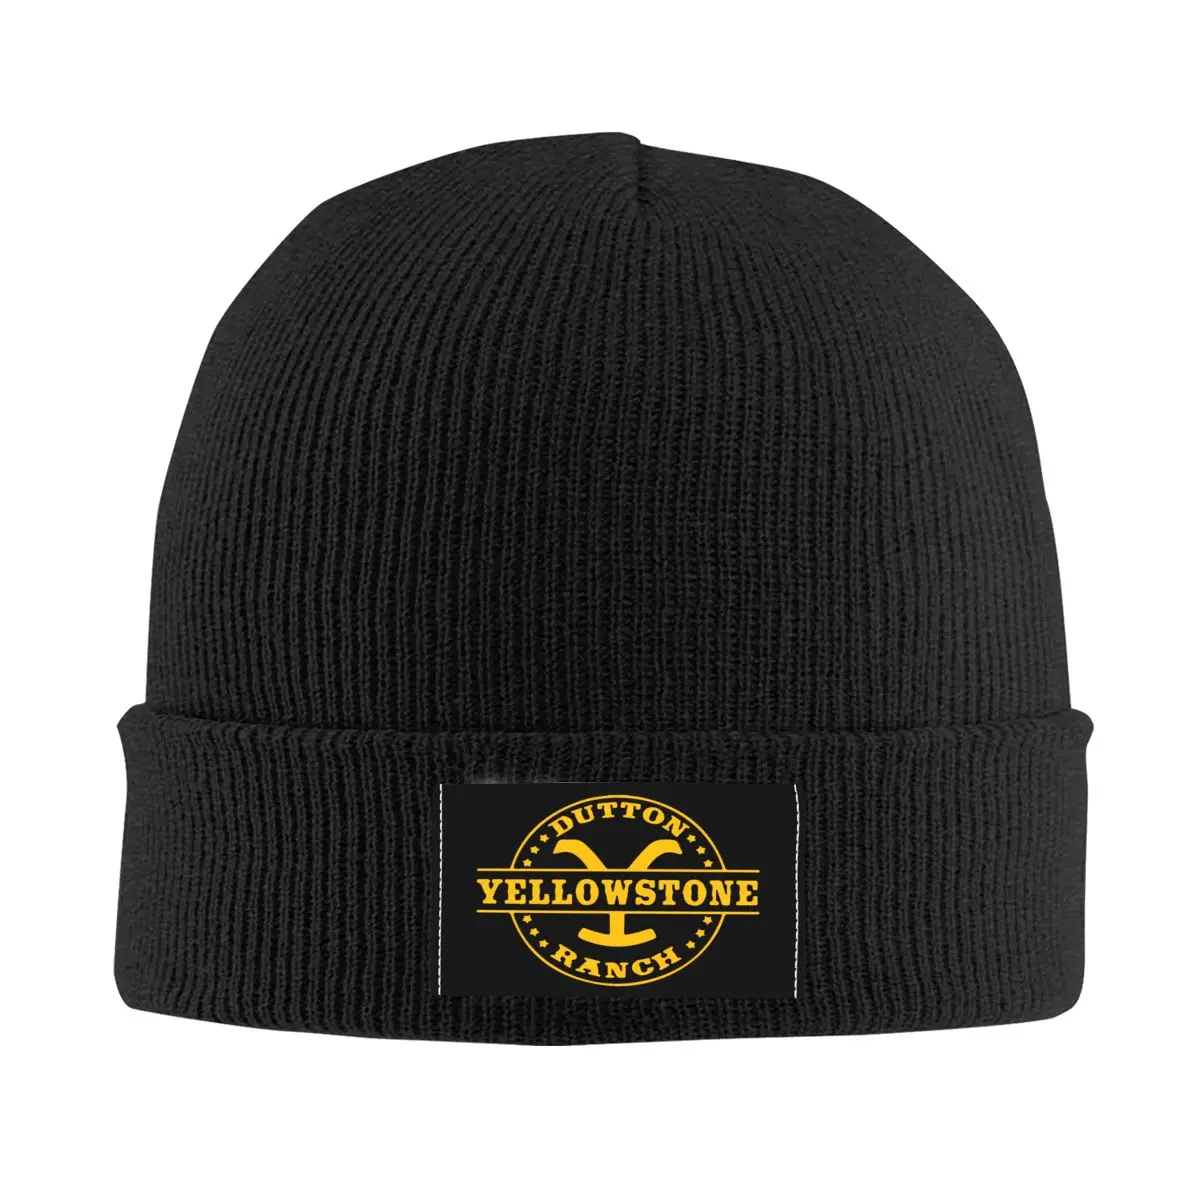 Yellowstone Dutton Ranch Bonnet Hats Cool Knitted Hat For Women Men Warm Winter Skullies Beanies Caps 1